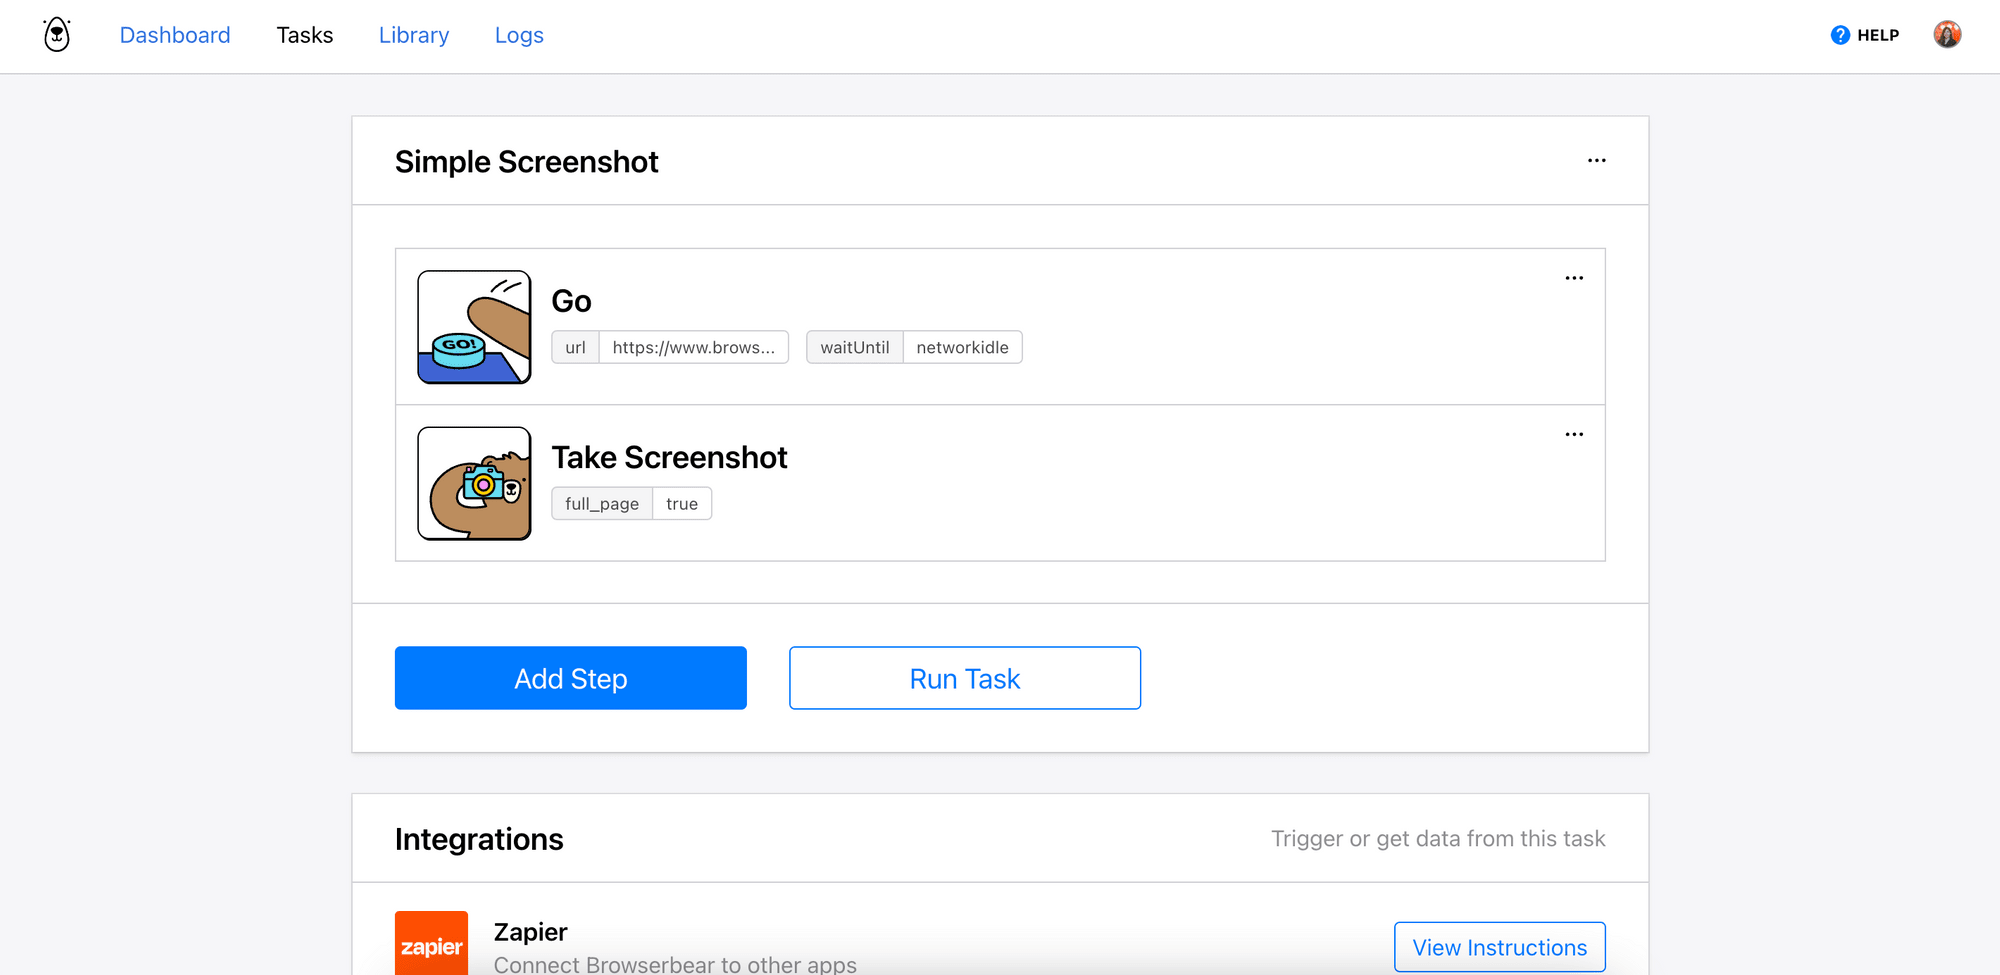 Browserbear task - Simple Screenshot